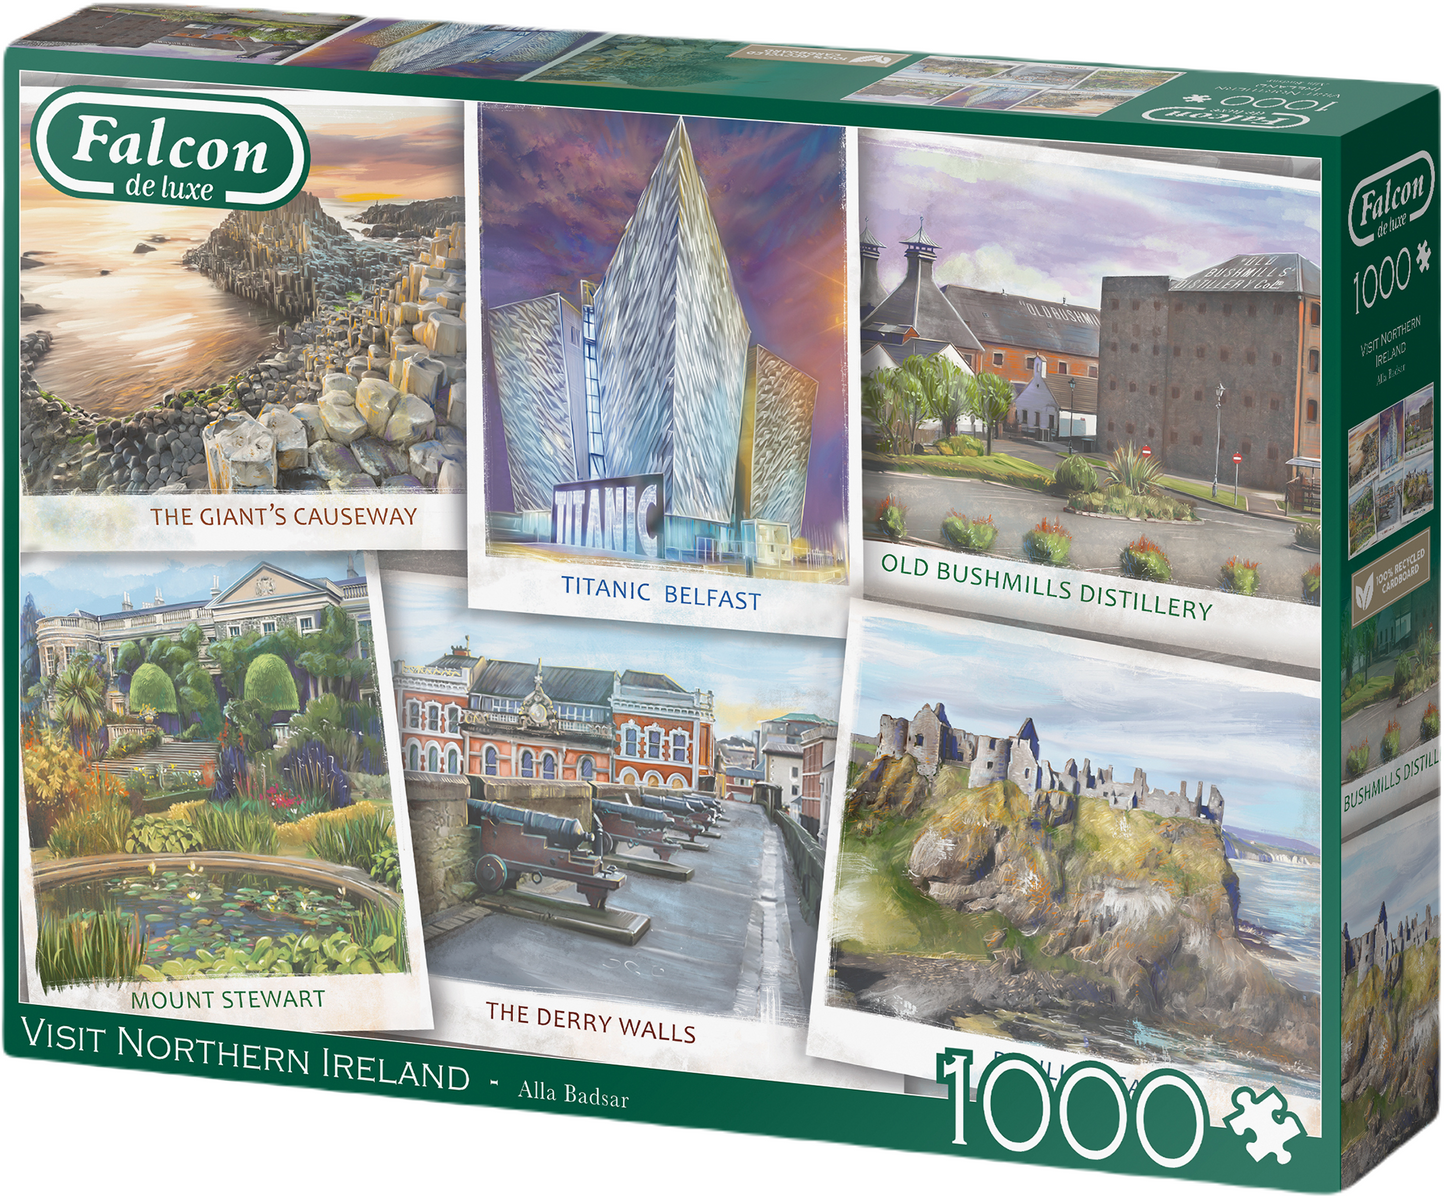 Falcon de luxe - Visit Northern Ireland - 1000 Piece Puzzle